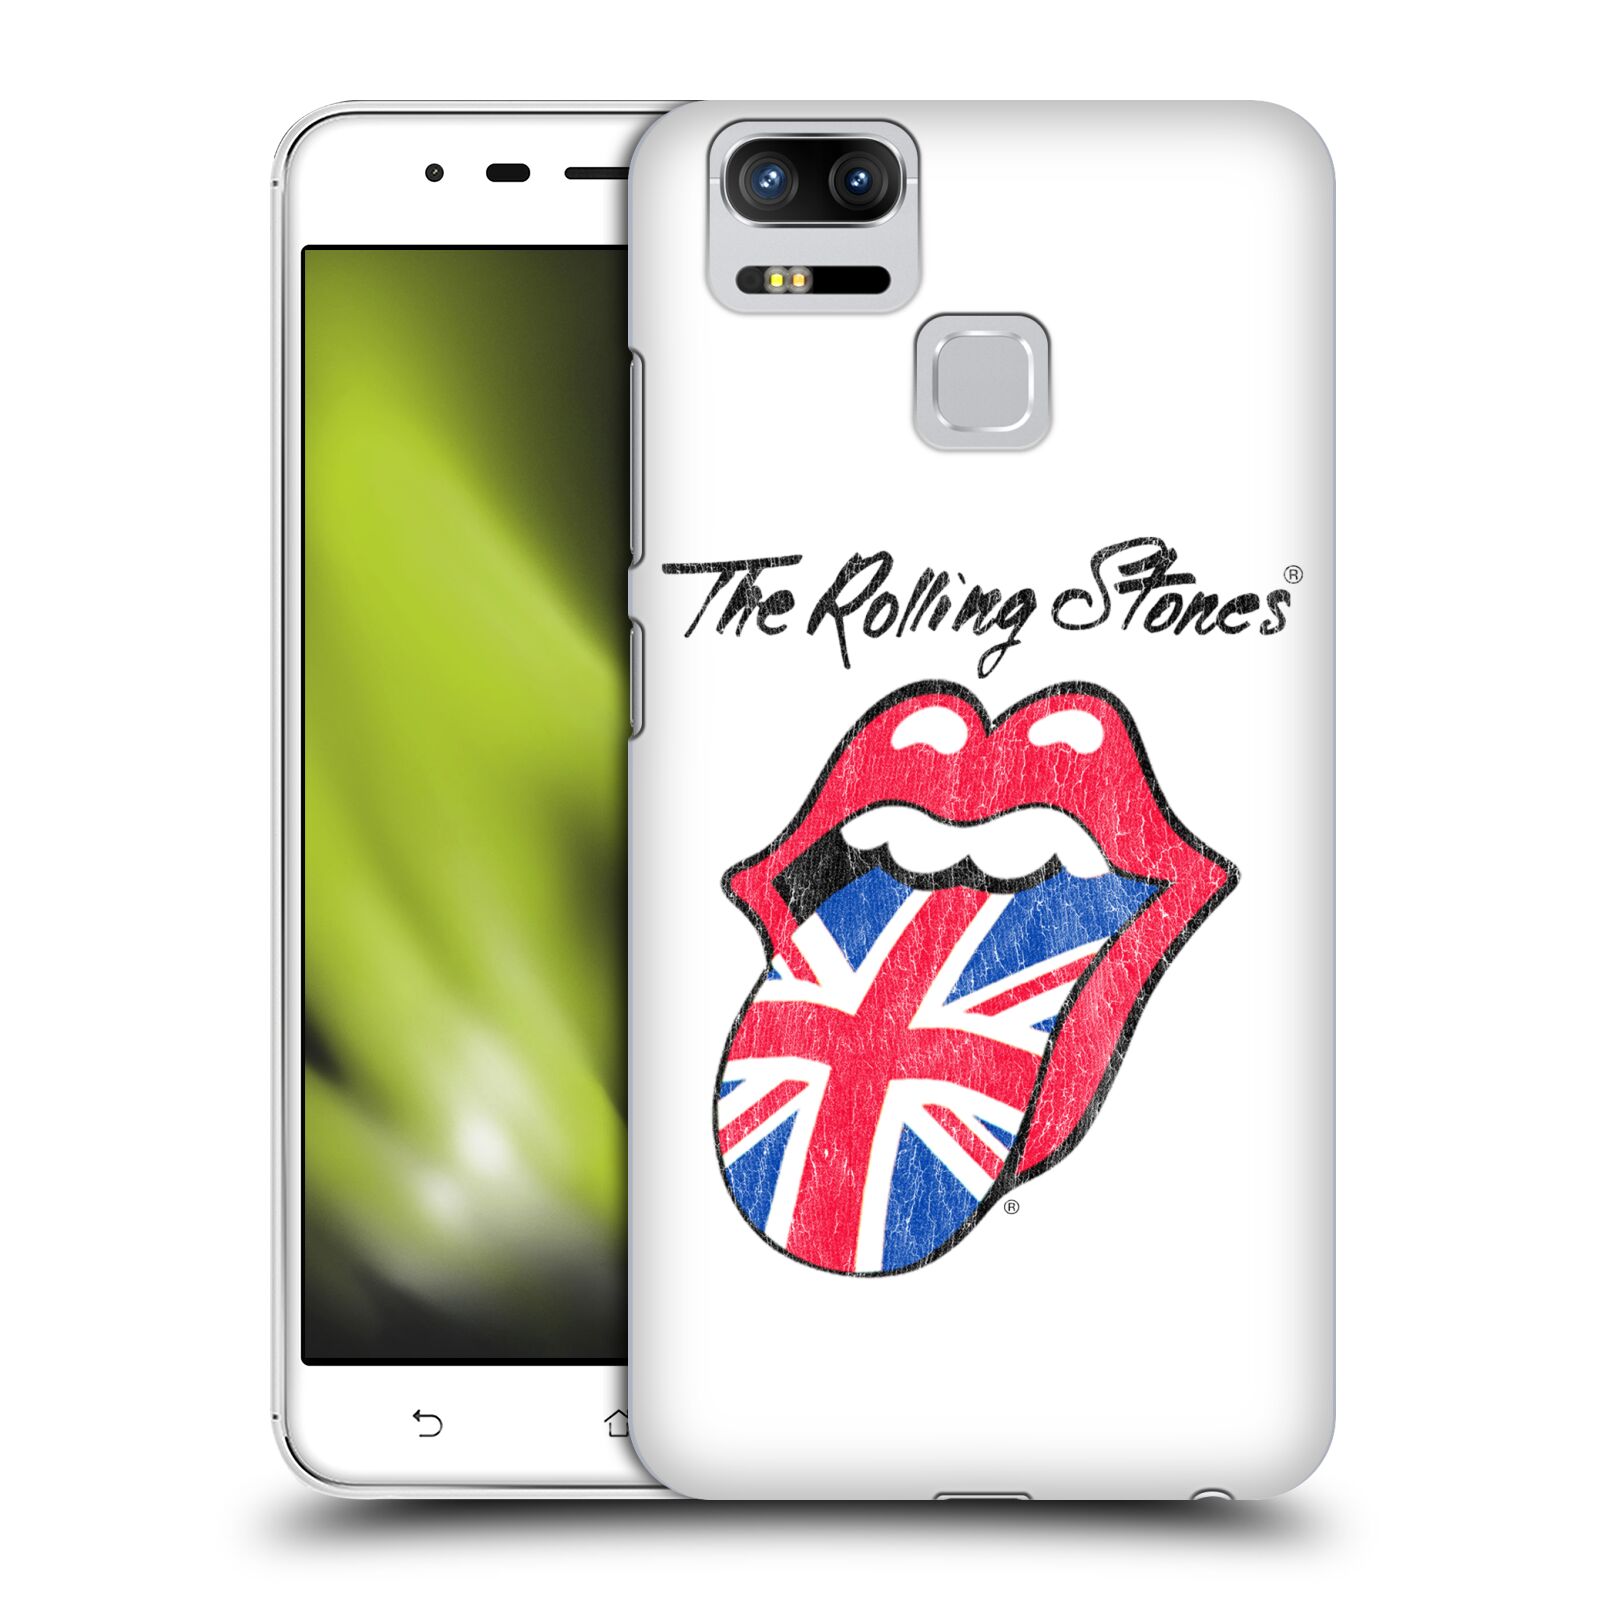 HEAD CASE plastový obal na mobil Asus Zenfone 3 Zoom ZE553KL rocková skupina Rolling Stones bílé pozadí